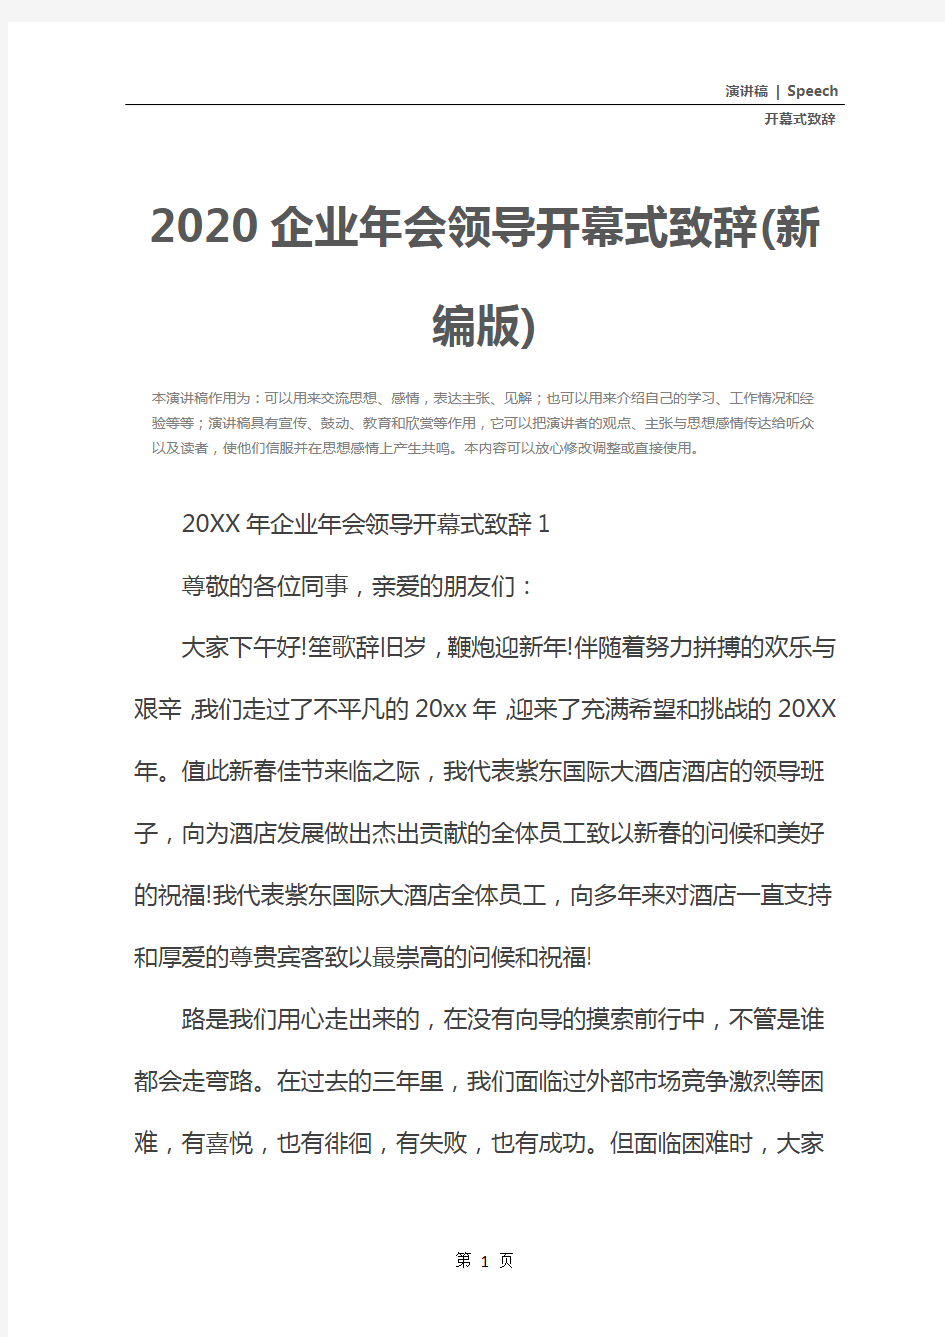 2020企业年会领导开幕式致辞(新编版)